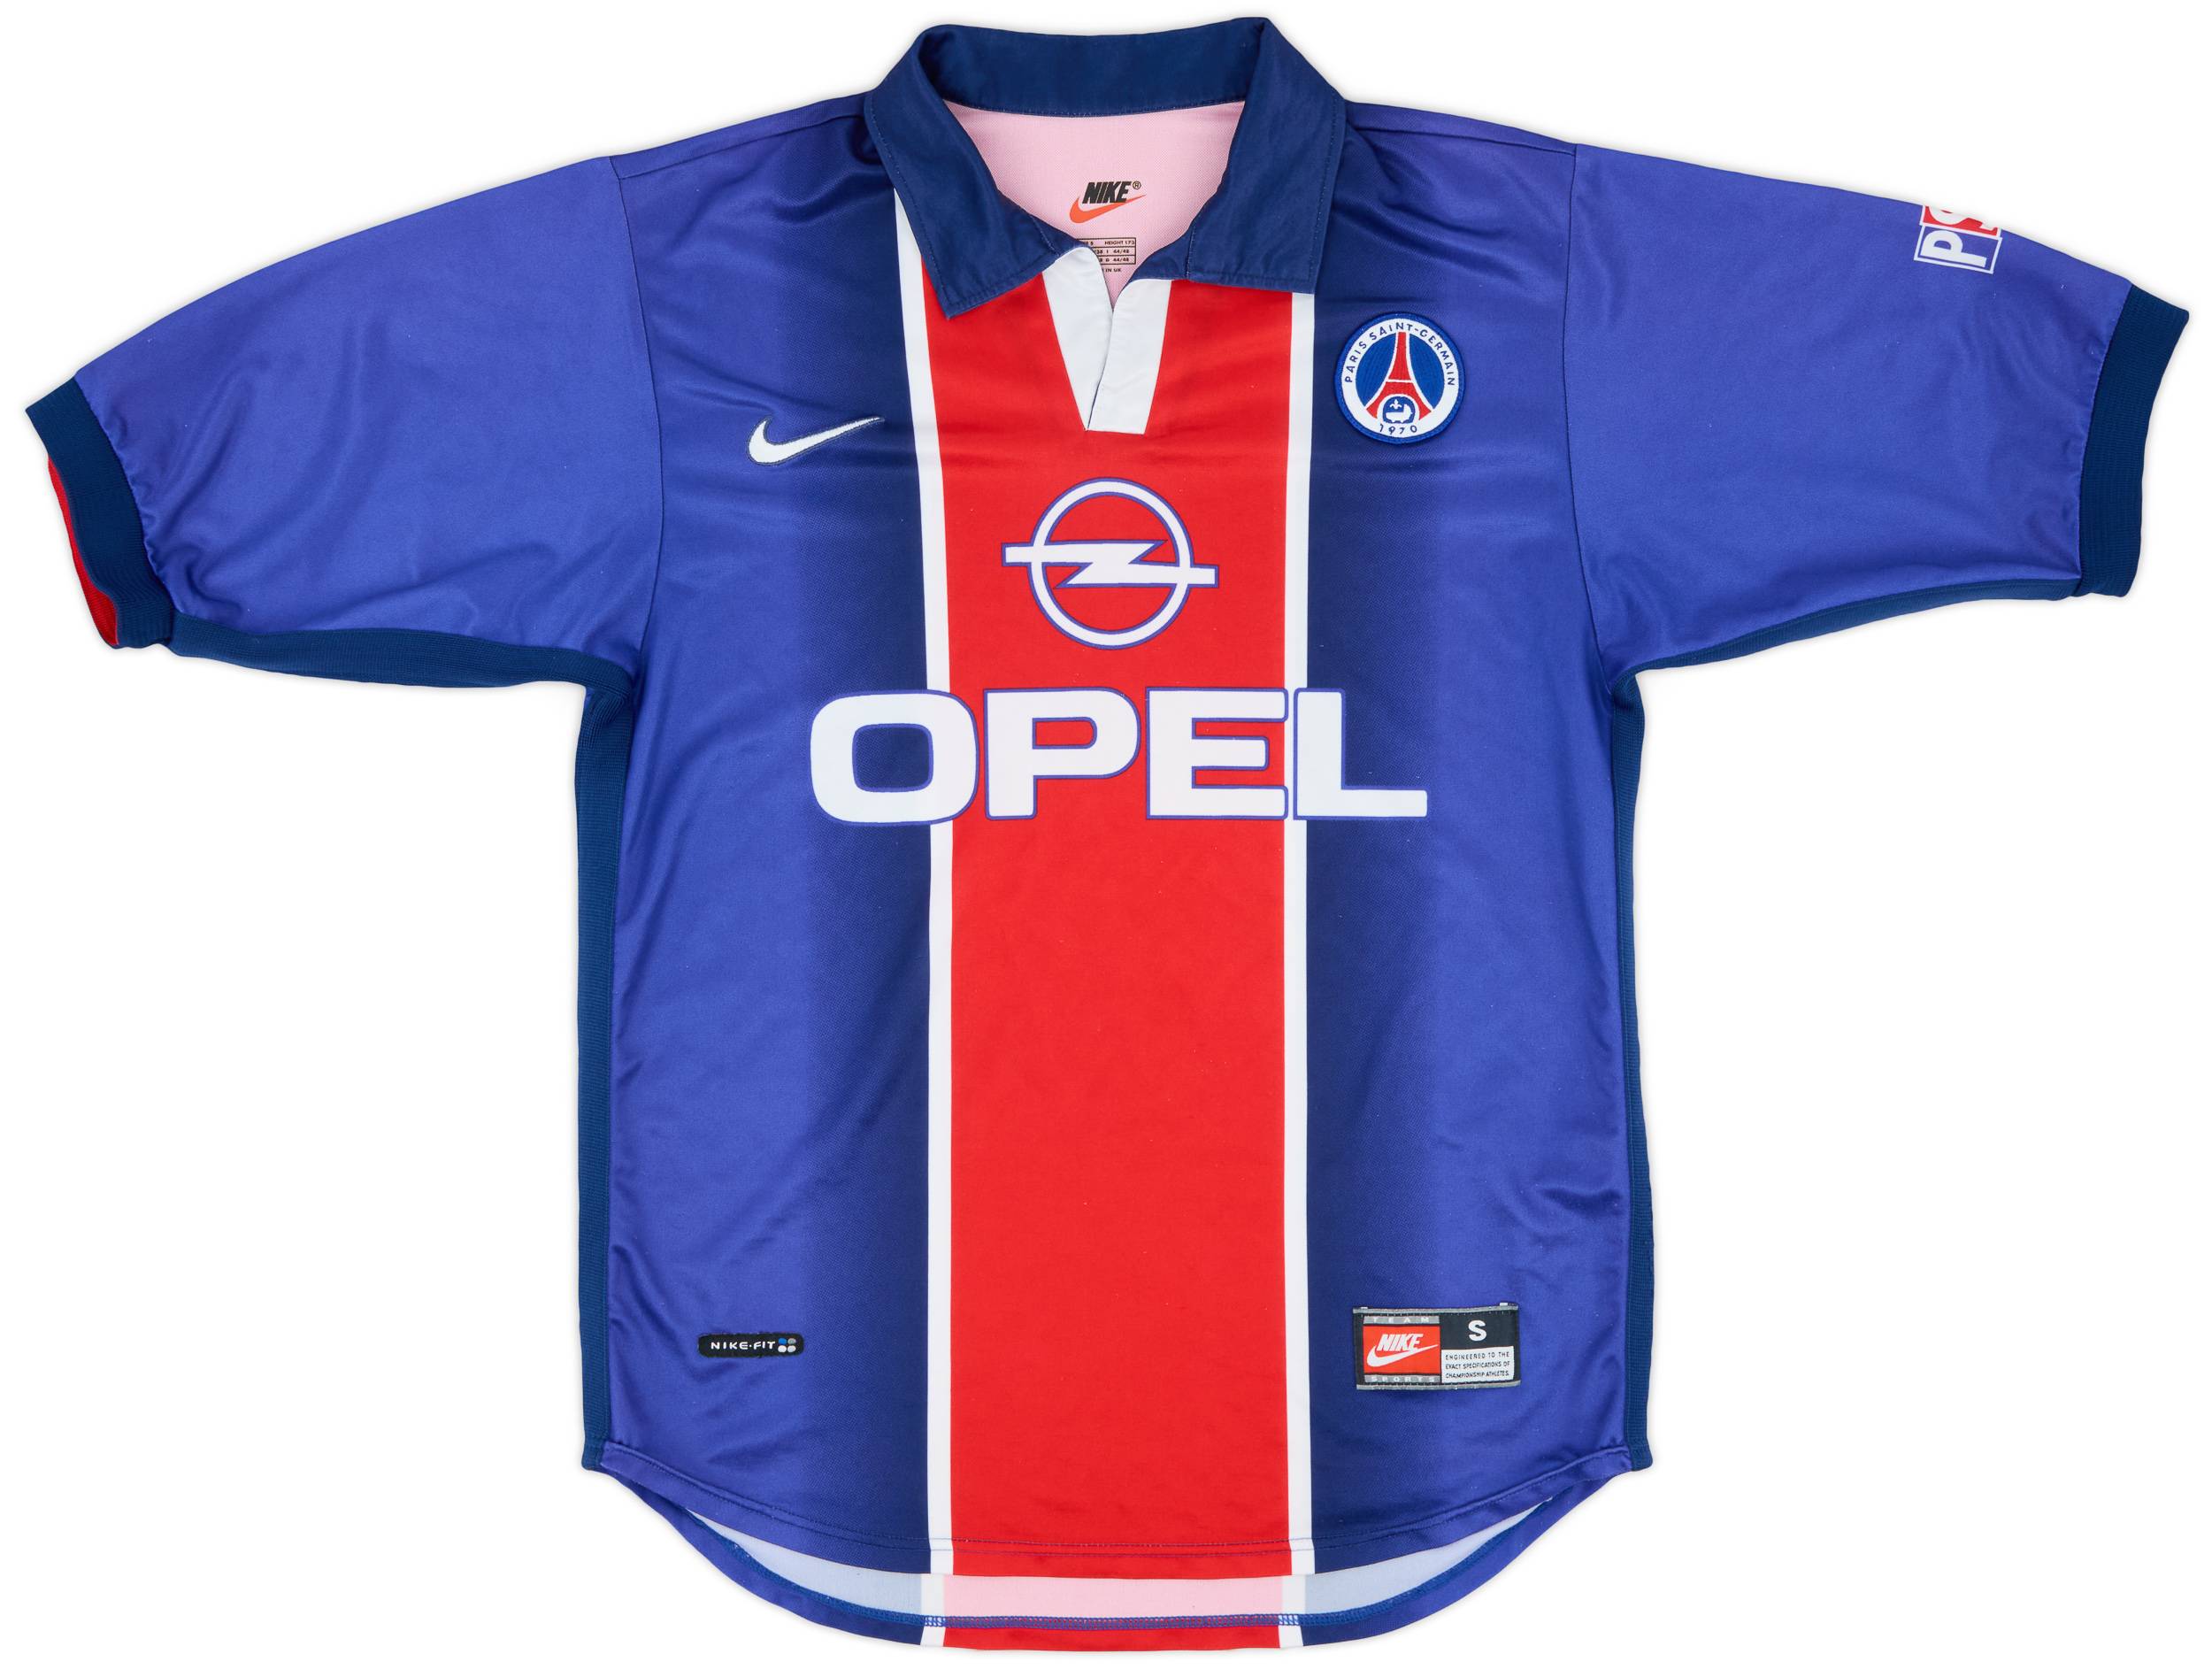 1998-99 Paris Saint-Germain Home Shirt - 8/10 - (S)